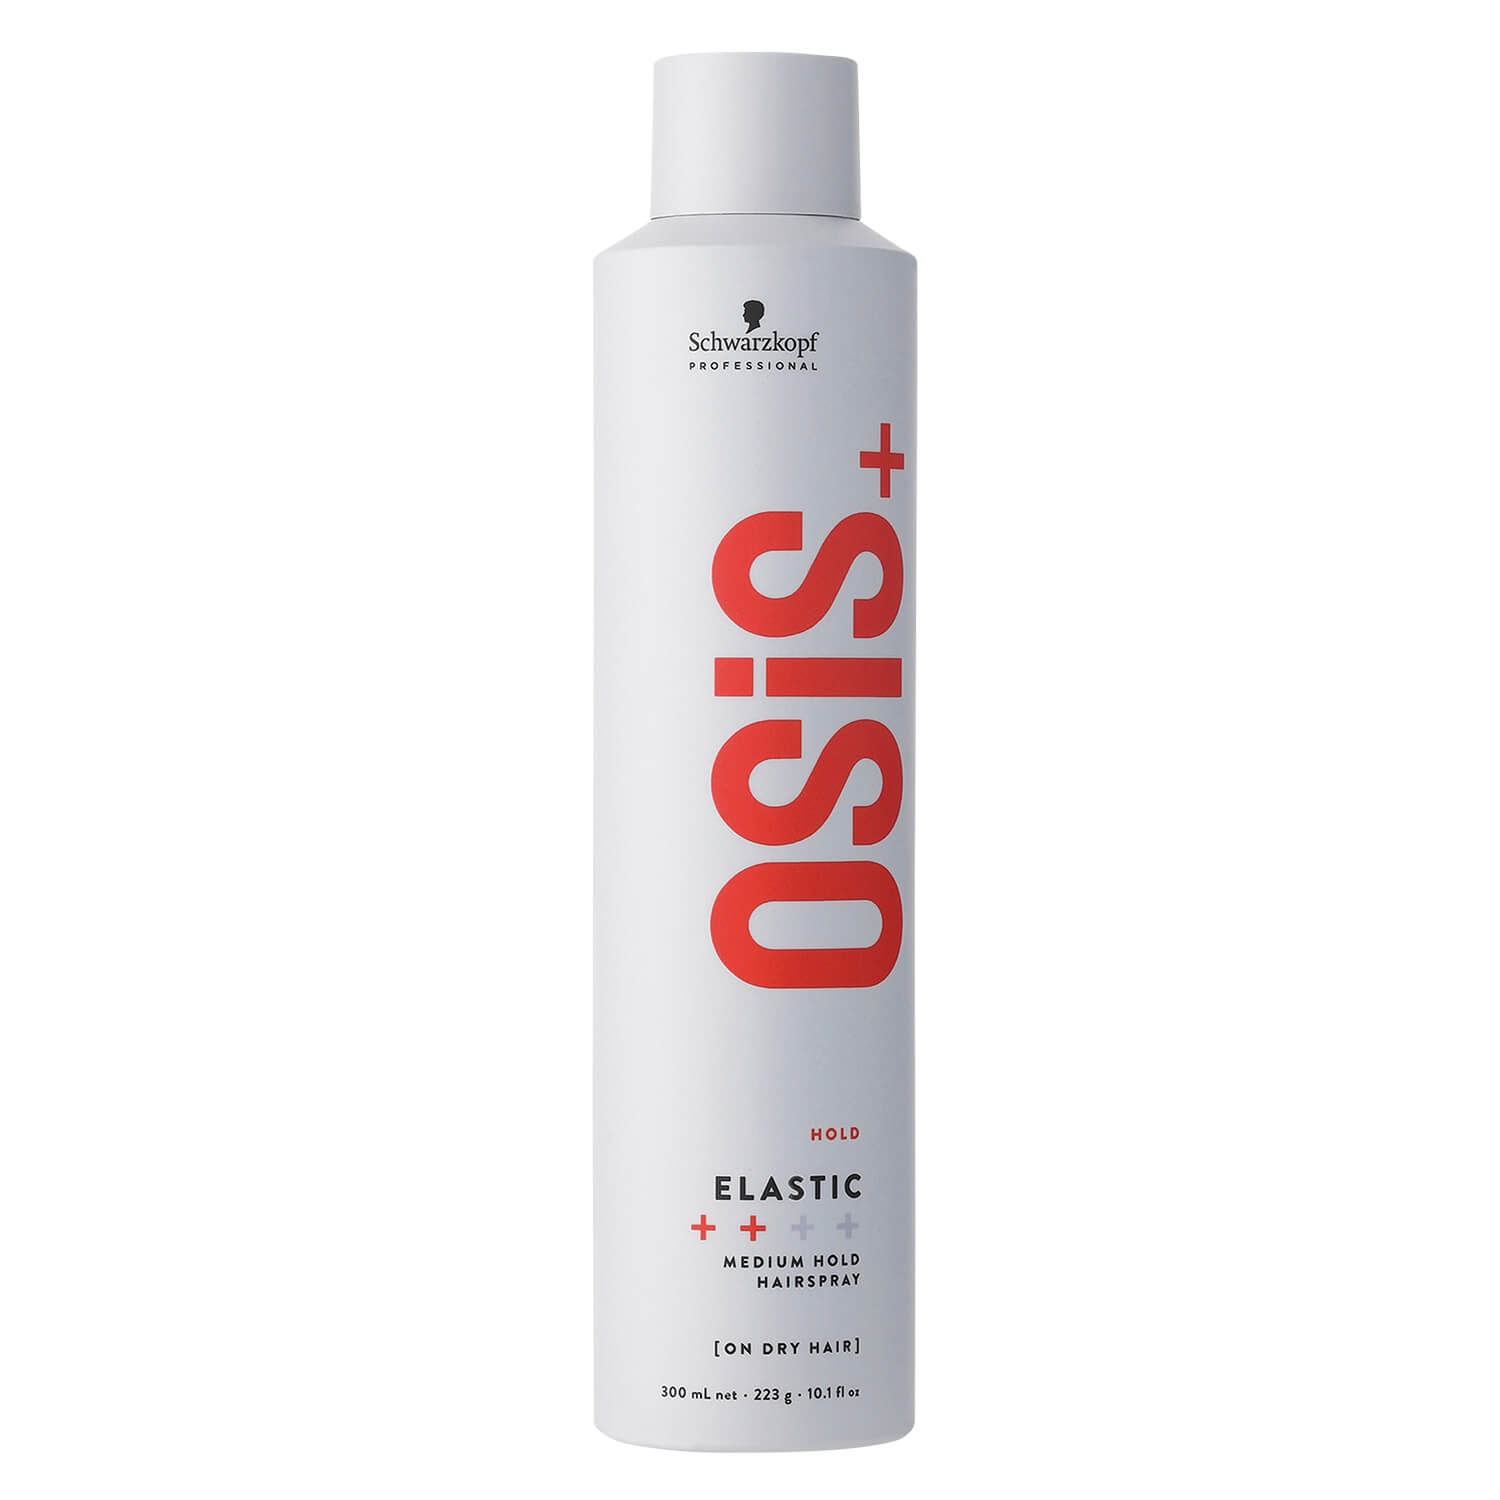 Produktbild von Osis - Elastic Medium Hold Hairspray